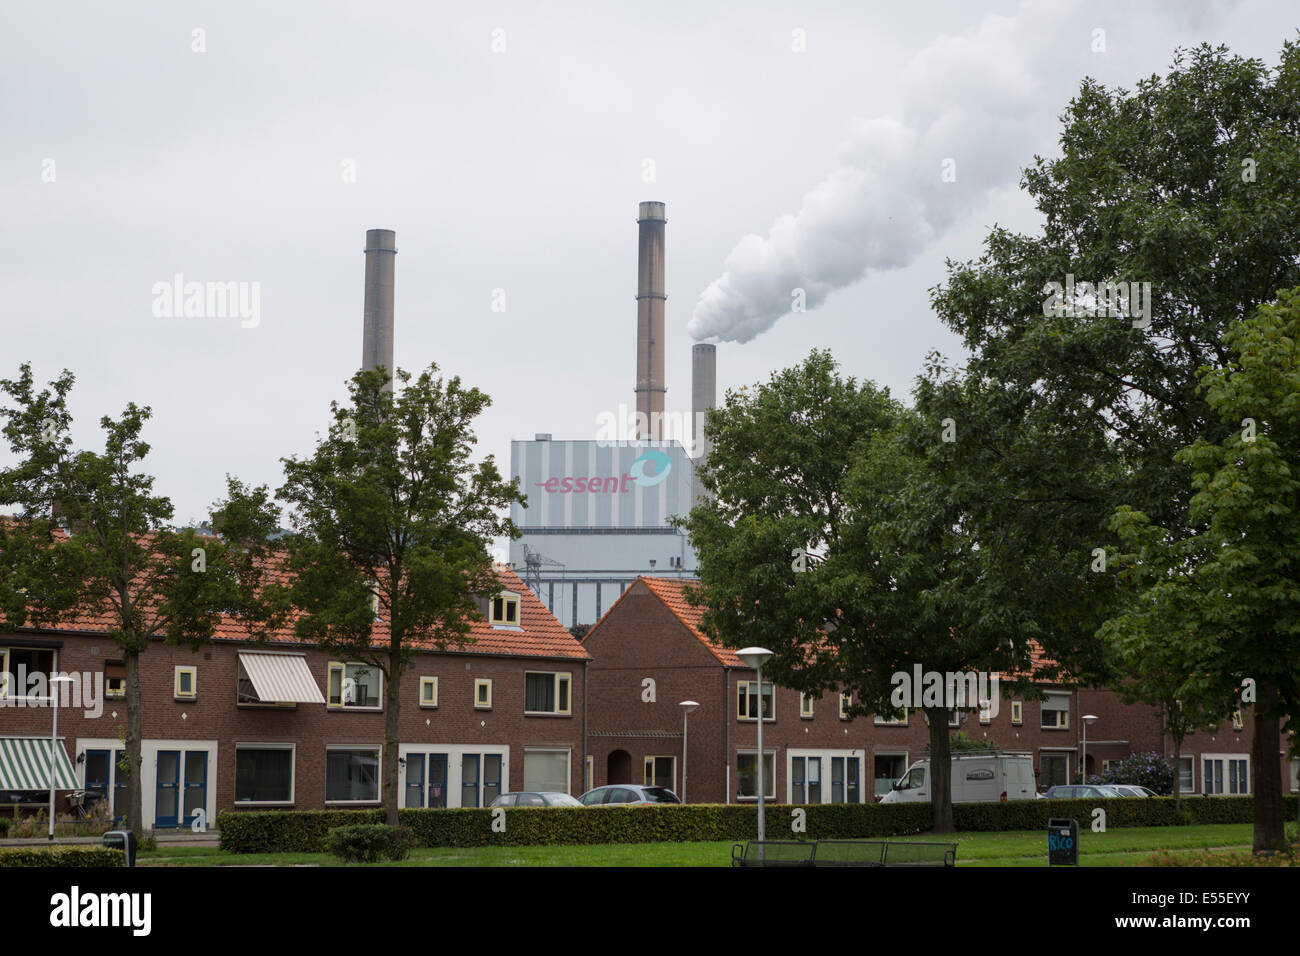 Amercentrale zone résidentielle derrière les maisons, centrale électrique au charbon appartenant à Essent aux Pays-Bas Banque D'Images